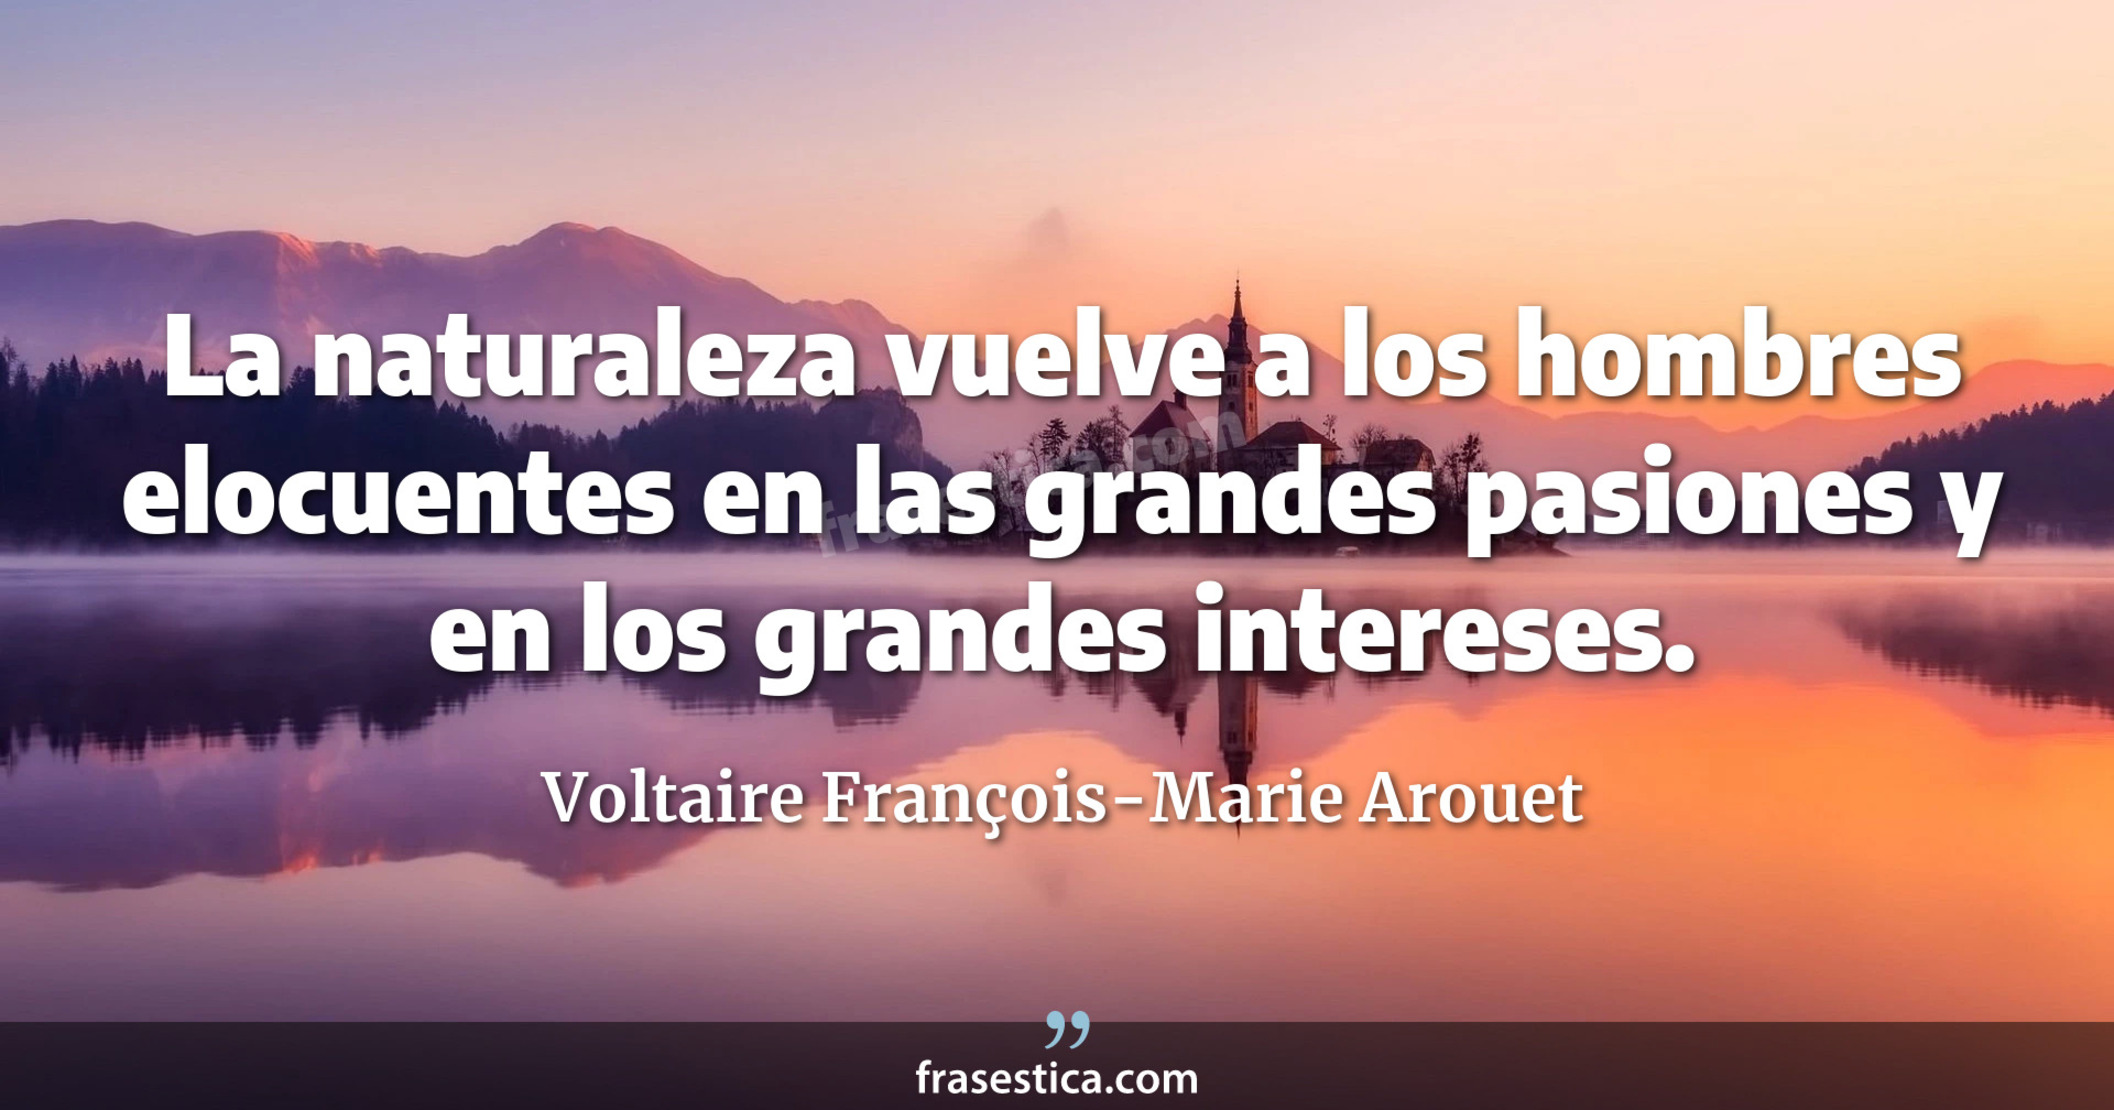 La naturaleza vuelve a los hombres elocuentes en las grandes pasiones y en los grandes intereses. - Voltaire François-Marie Arouet